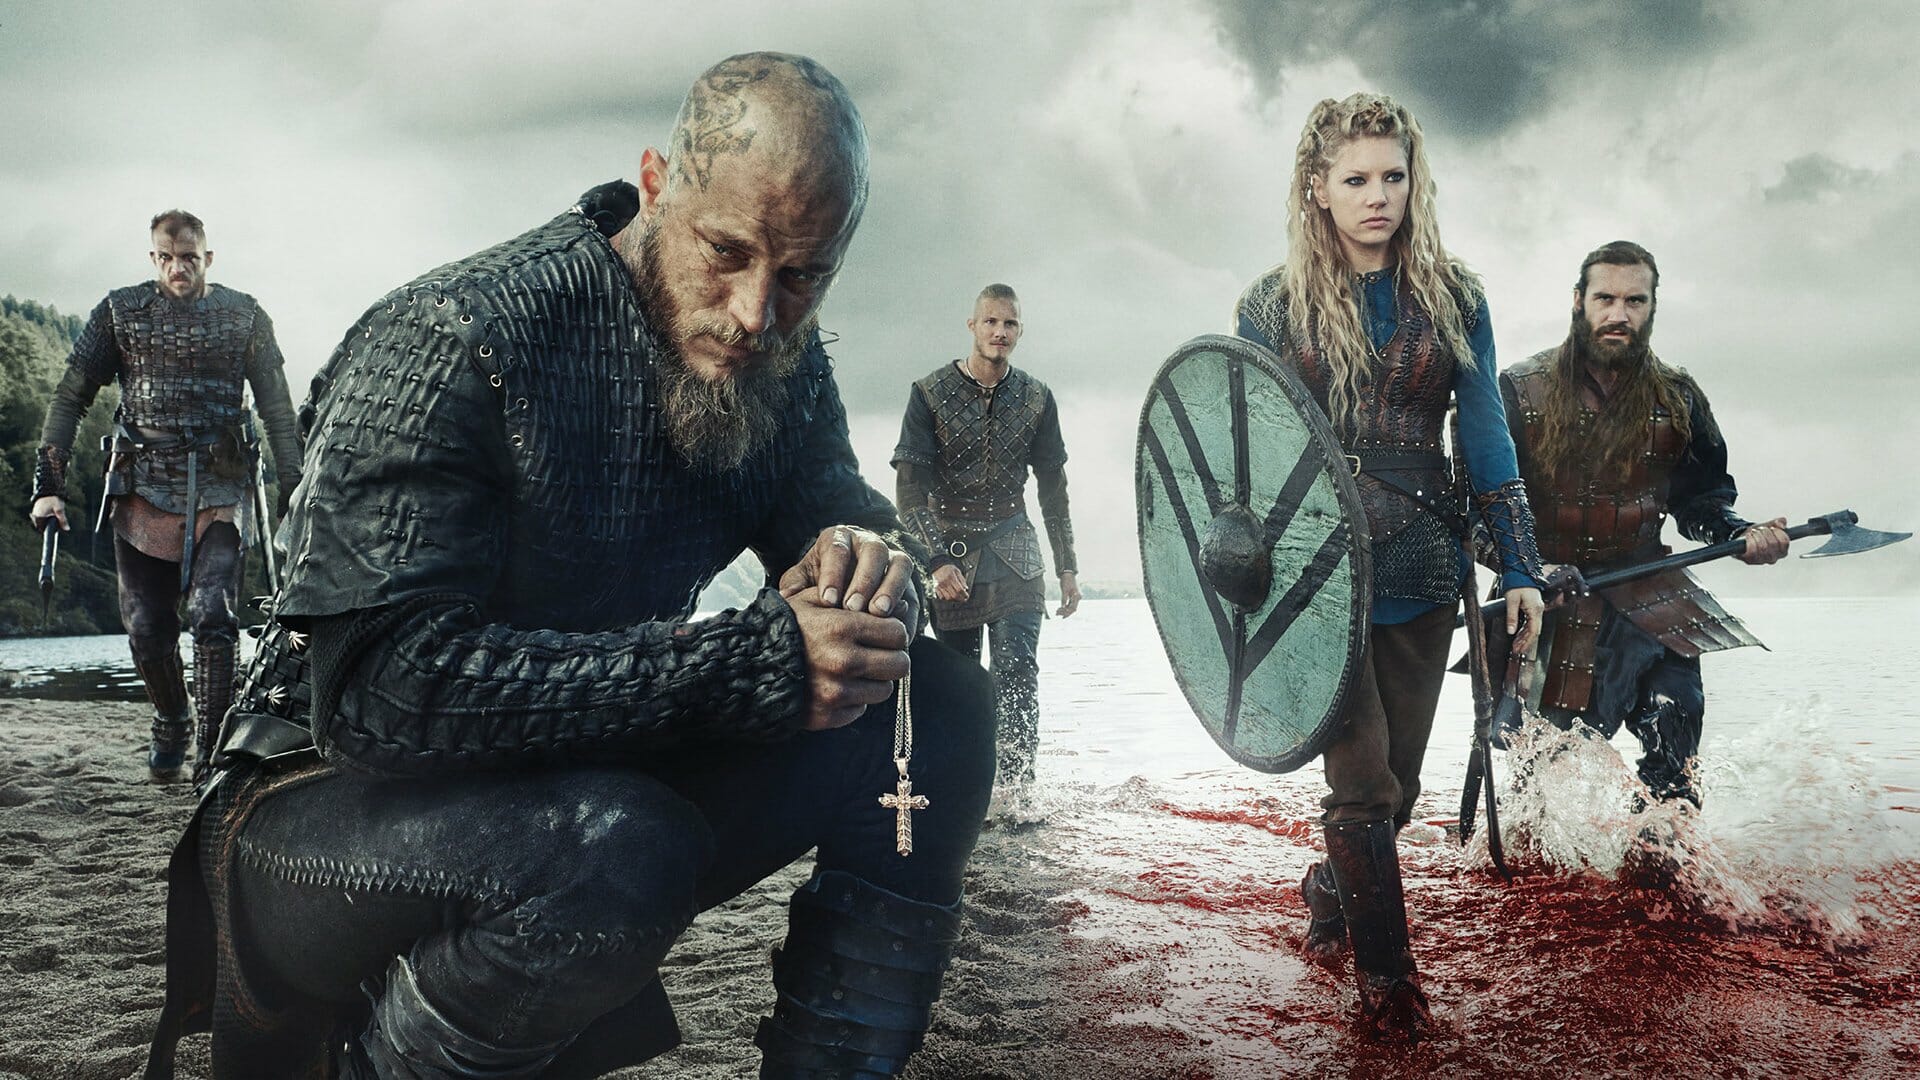 Vikings: Quantos anos Bjorn tinha na 6ª temporada? - Online Séries